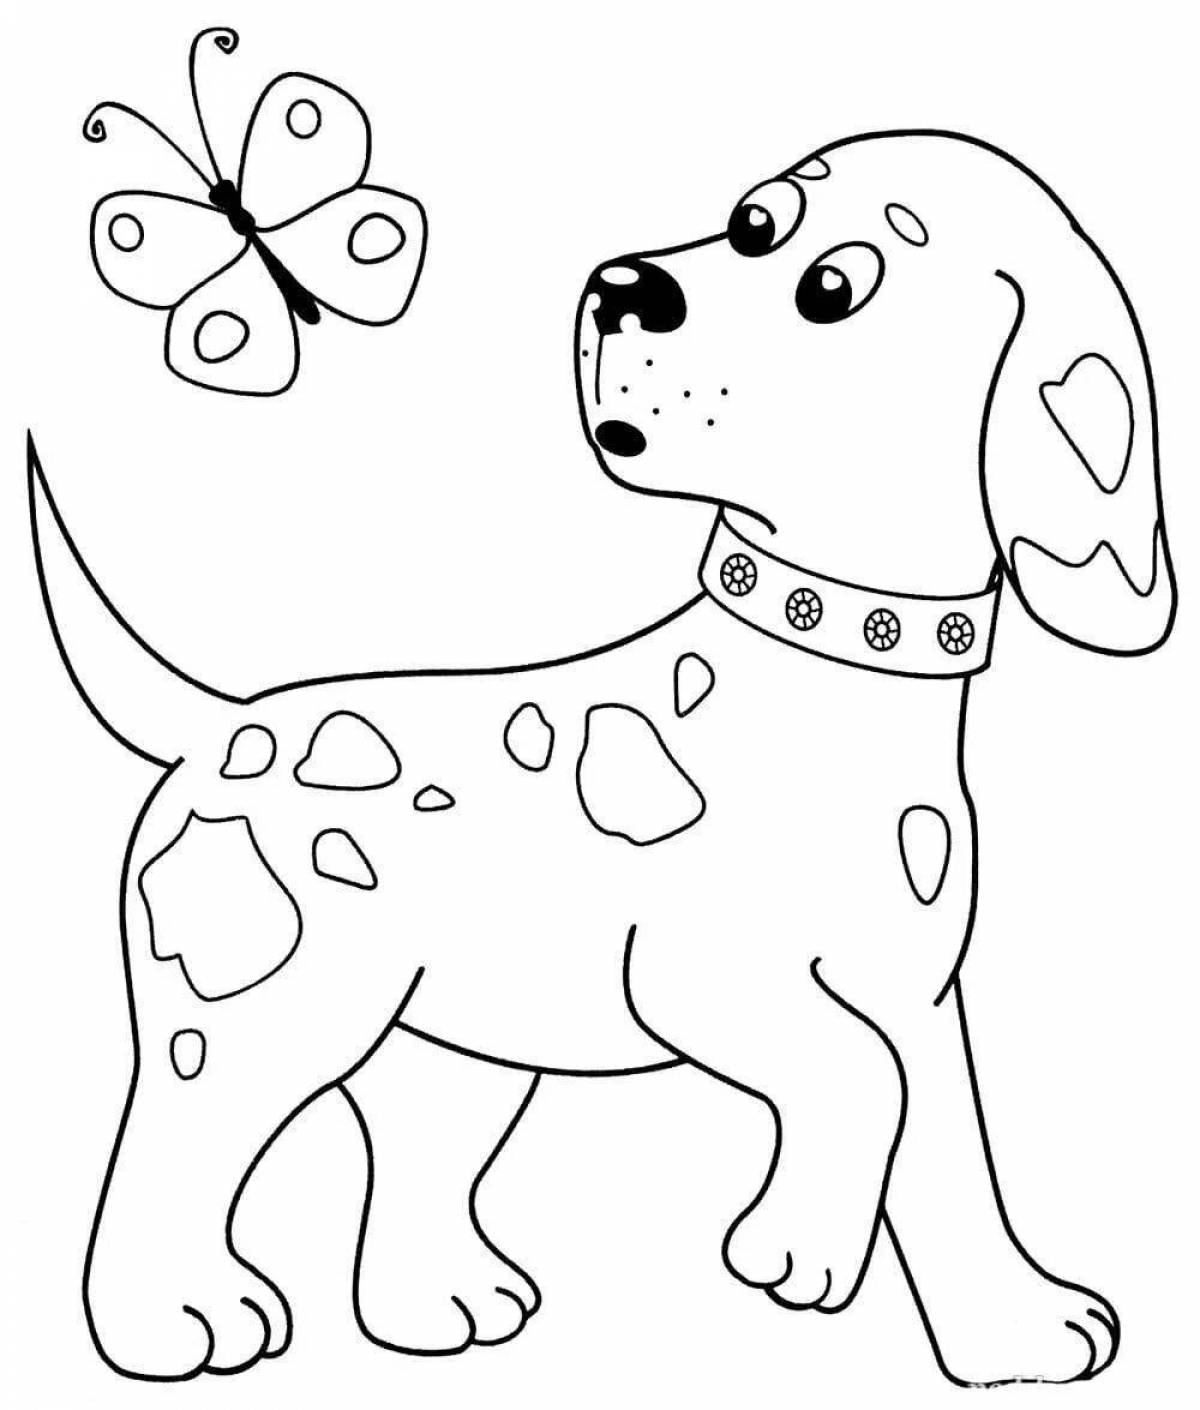 Веселая раскраска собака для детей 2-3 лет